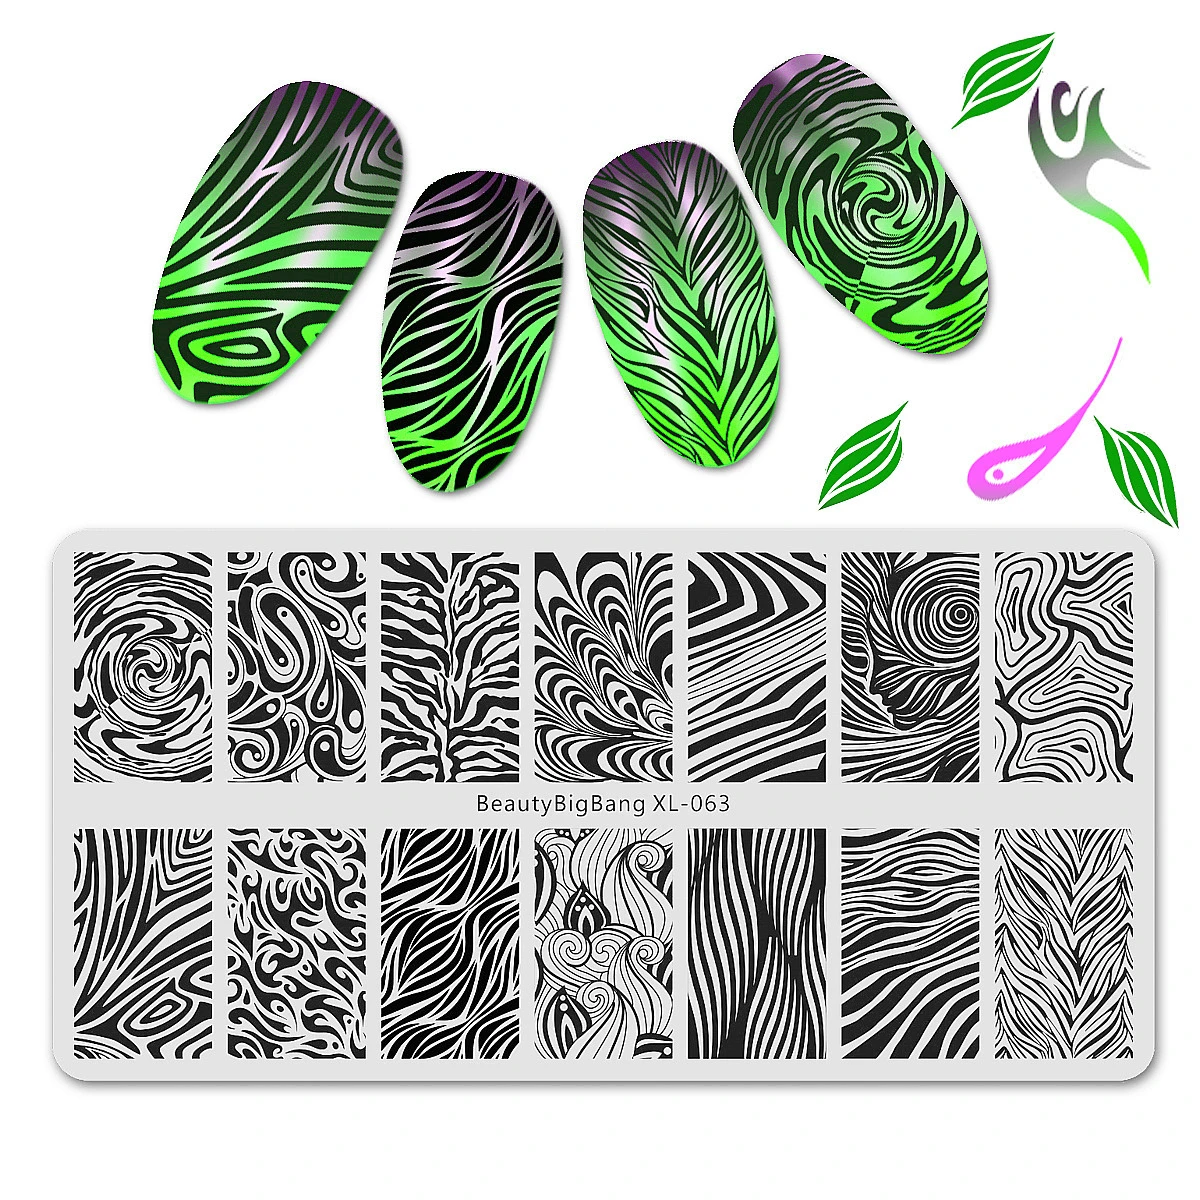 BeautyBigBang пластины для штамповки ногтей кленовые листья цветок изображения 6*12 см пластина для стемпинга для нейл-арта плесень шаблон для ногтей XL-064